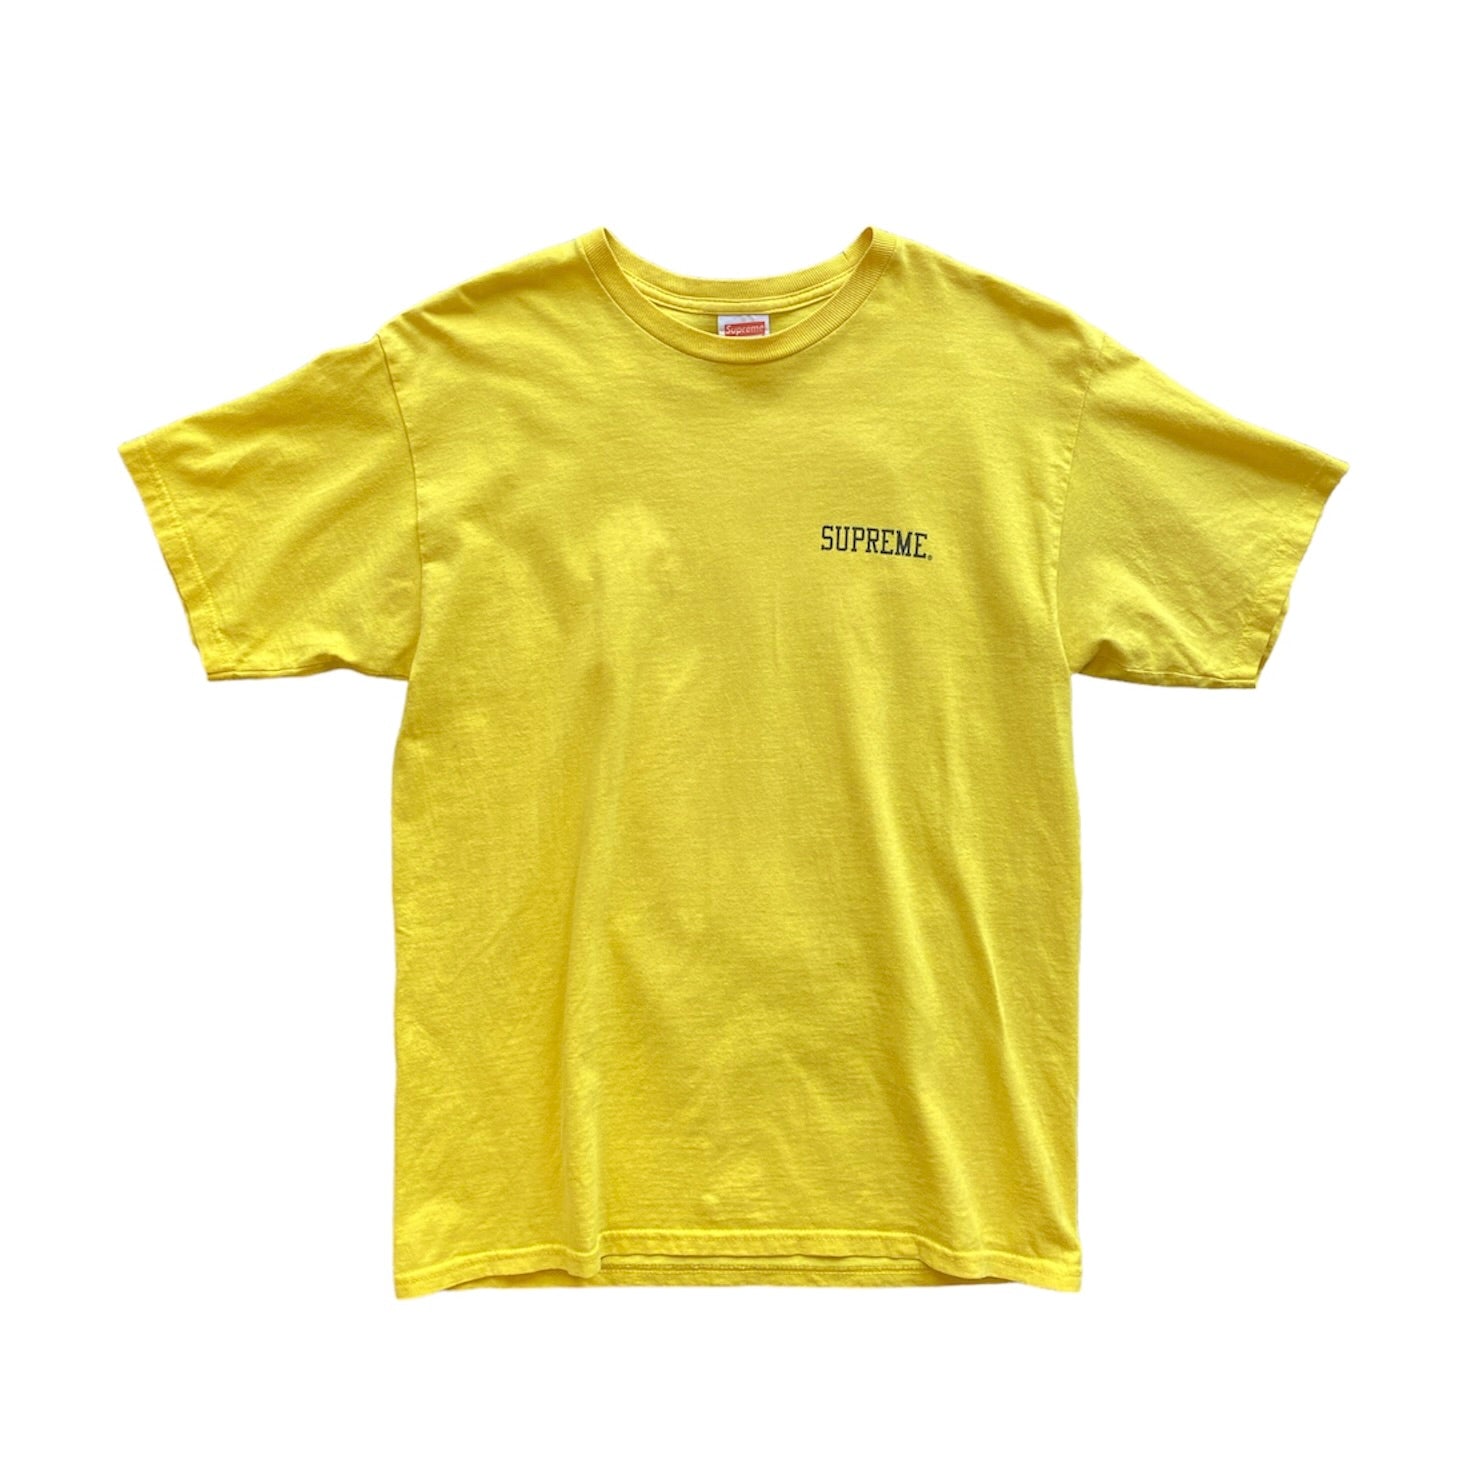 Supreme FW12 Stax Records Yellow Tshirt